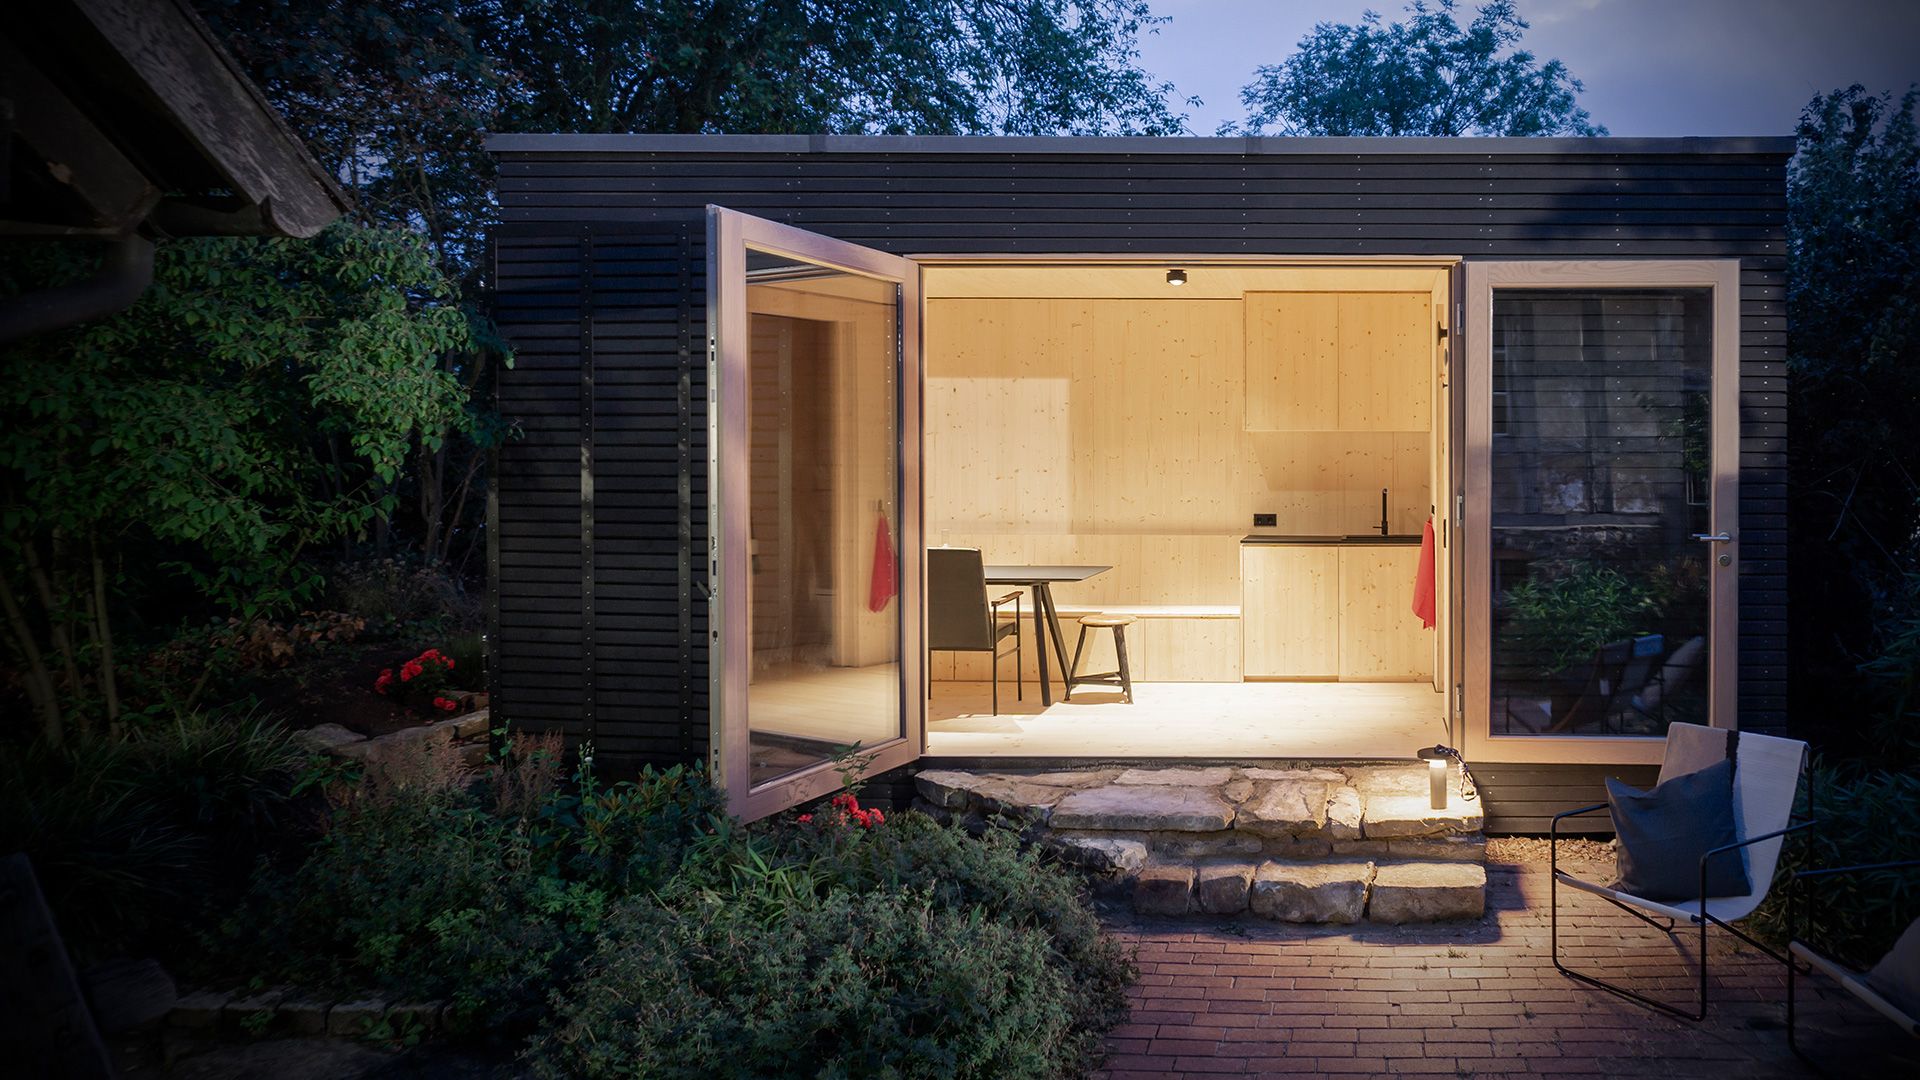 Hohe Wohnqualität auf kleinstem Raum bieten die modularen Holzhäuser von Mima